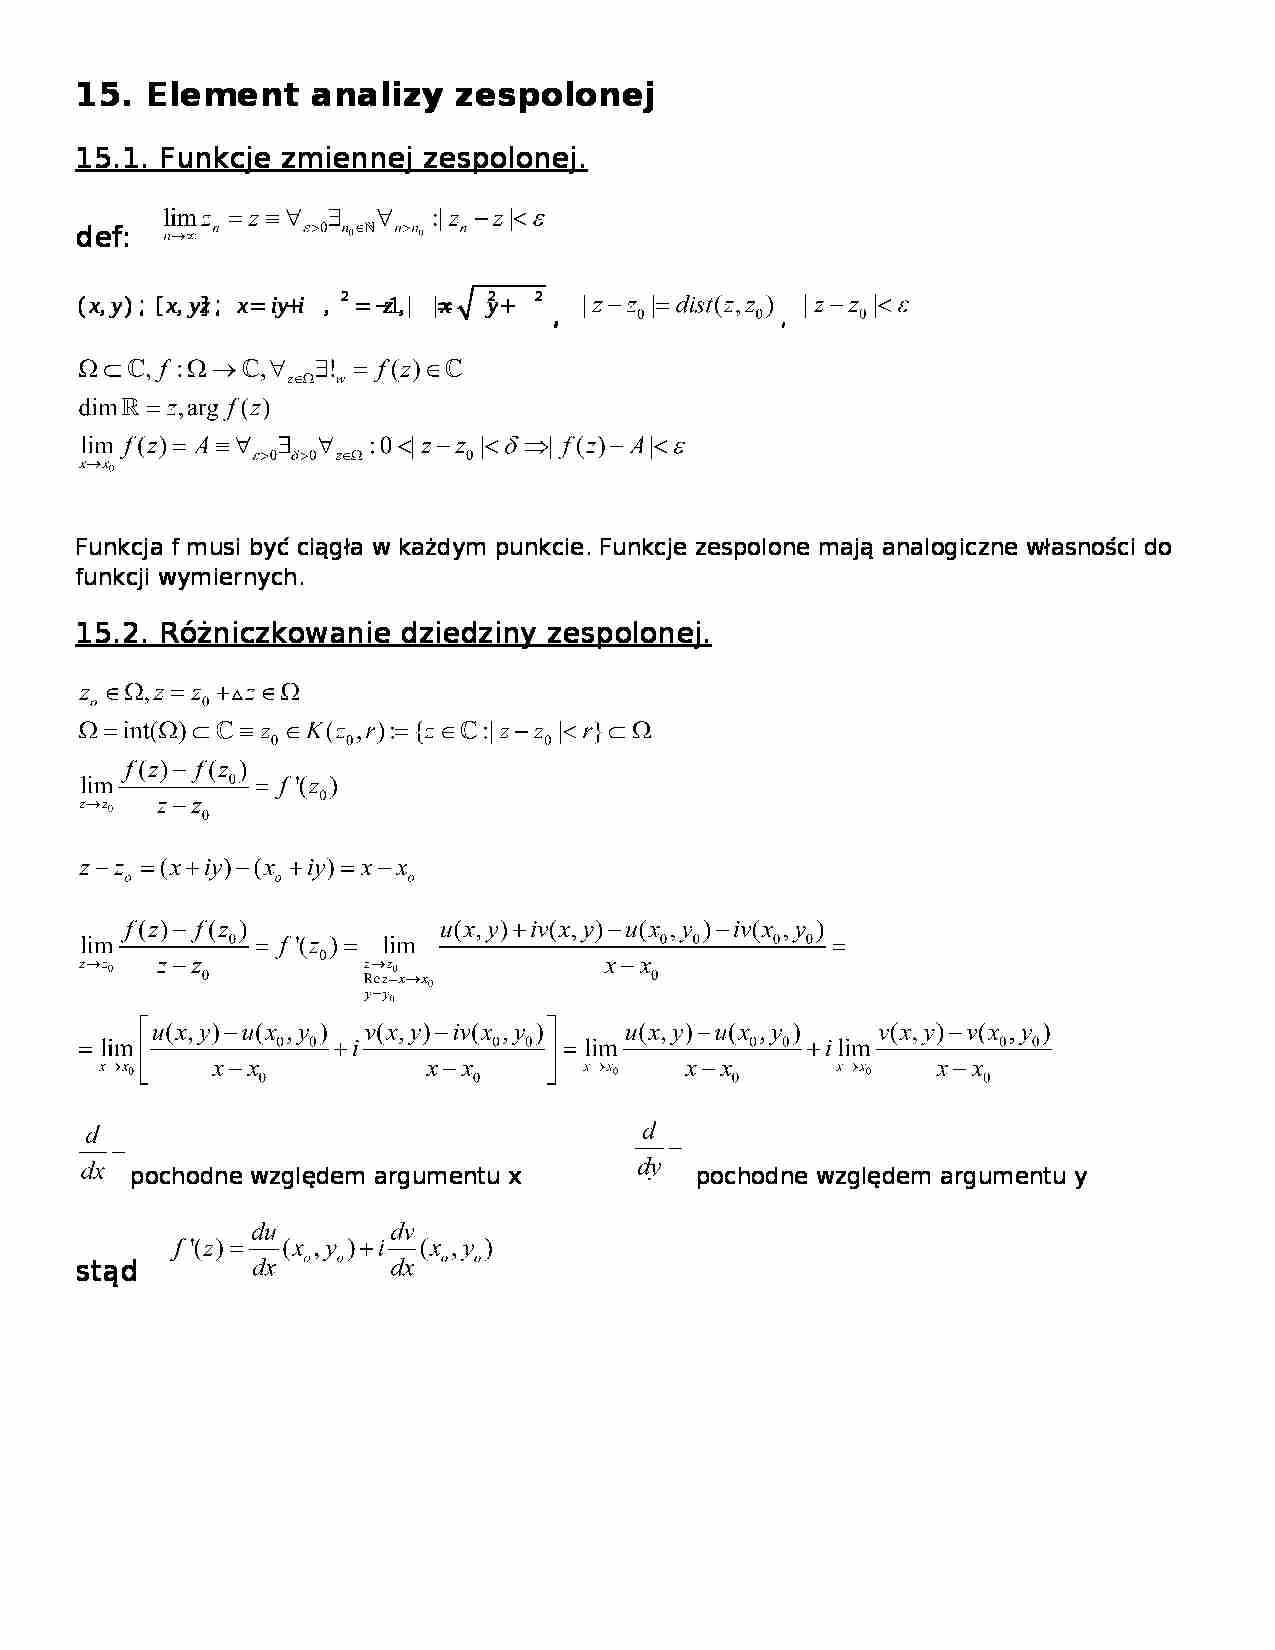 Element analizy zespolonej -  Funkcje zmiennej zespolonej - strona 1